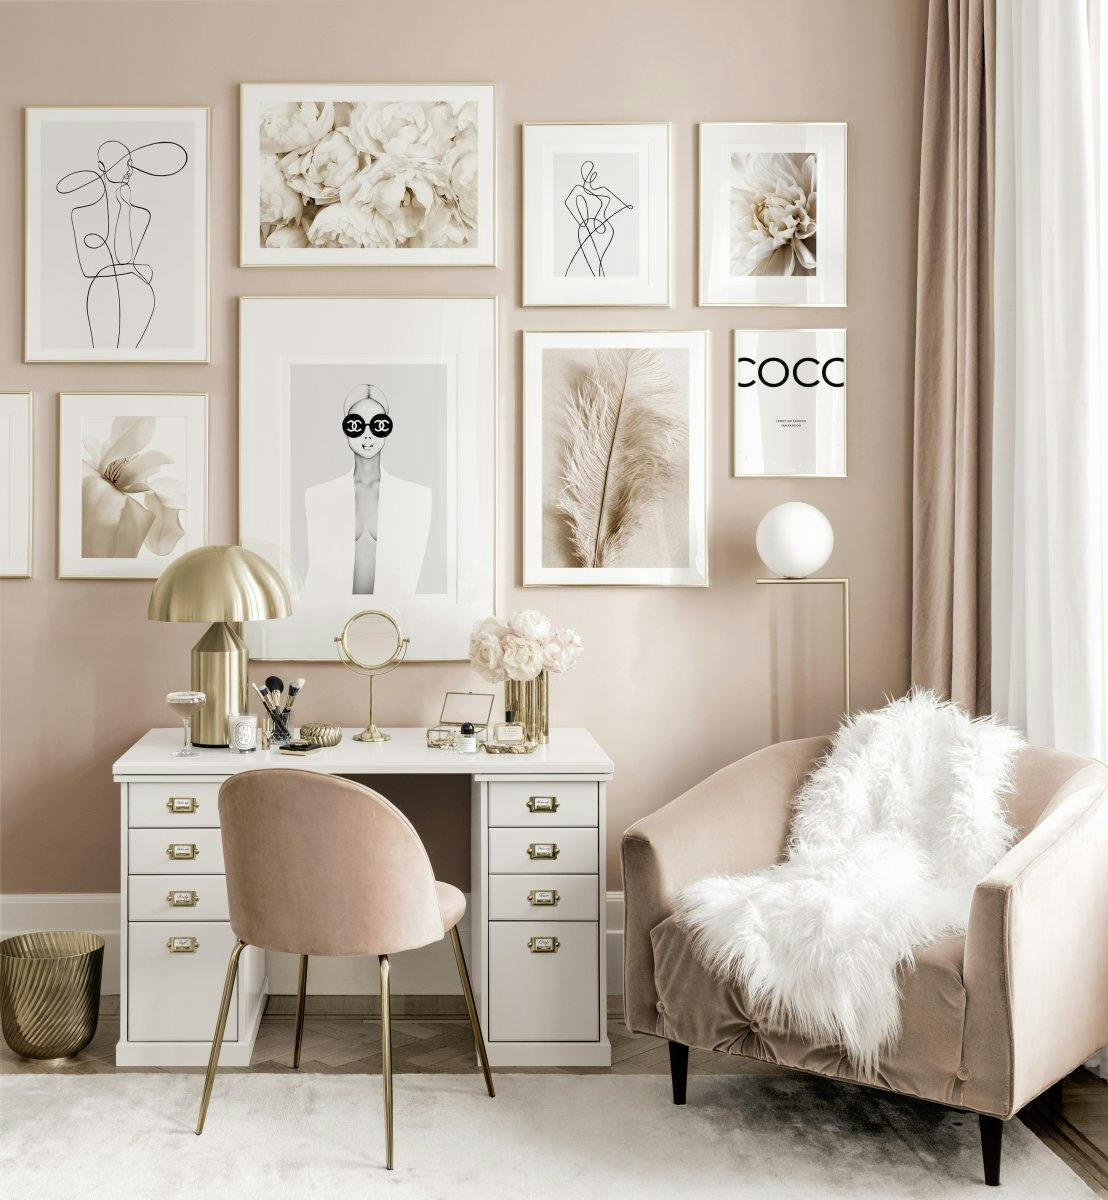 Elegancka galeria obrazow rozowa garderoba plakaty peytil chanel zlote ramki